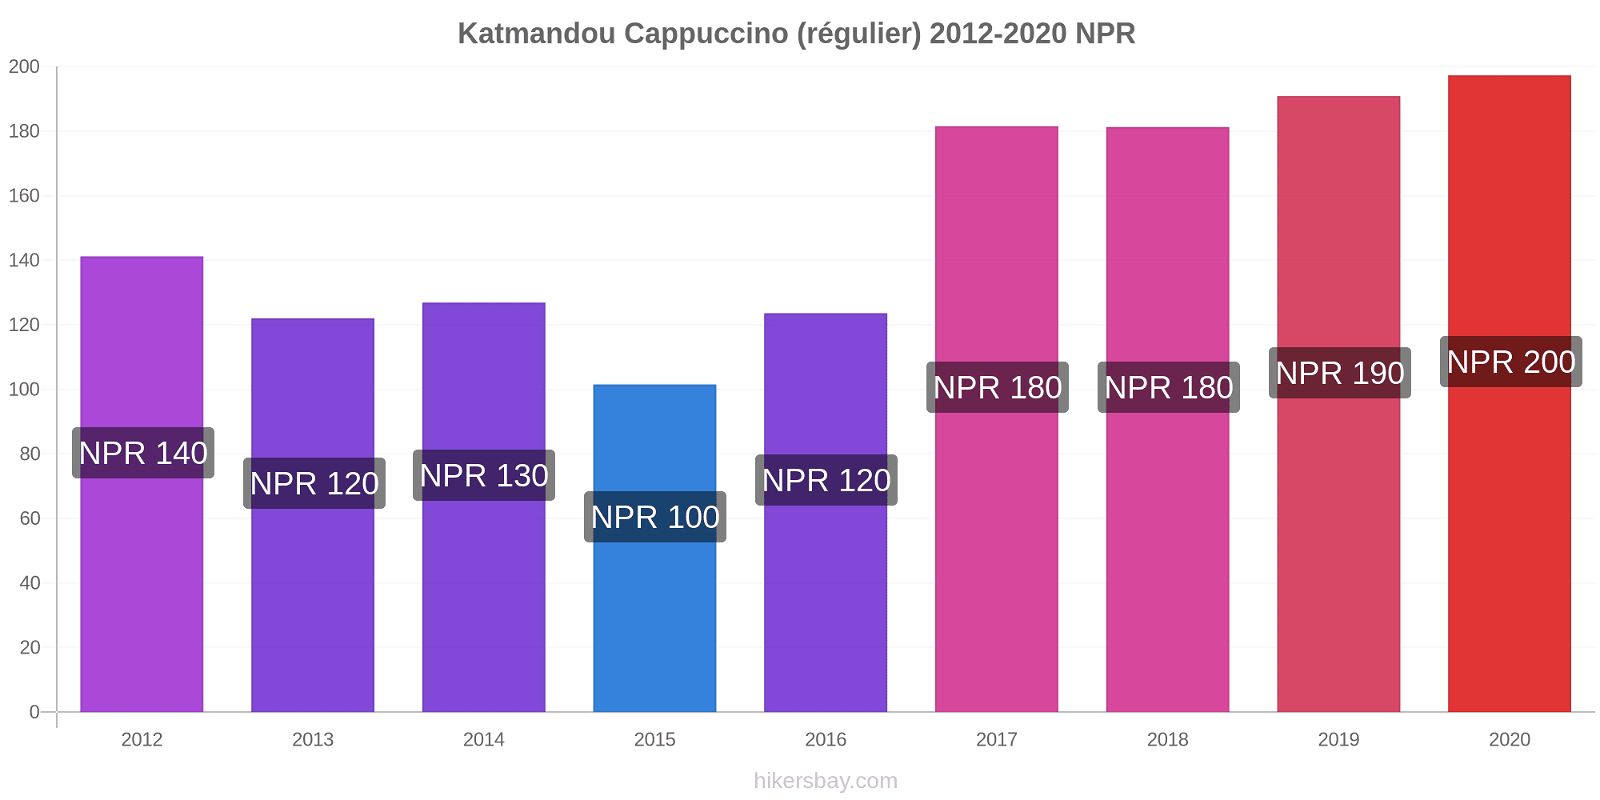 Katmandou changements de prix Cappuccino (régulier) hikersbay.com